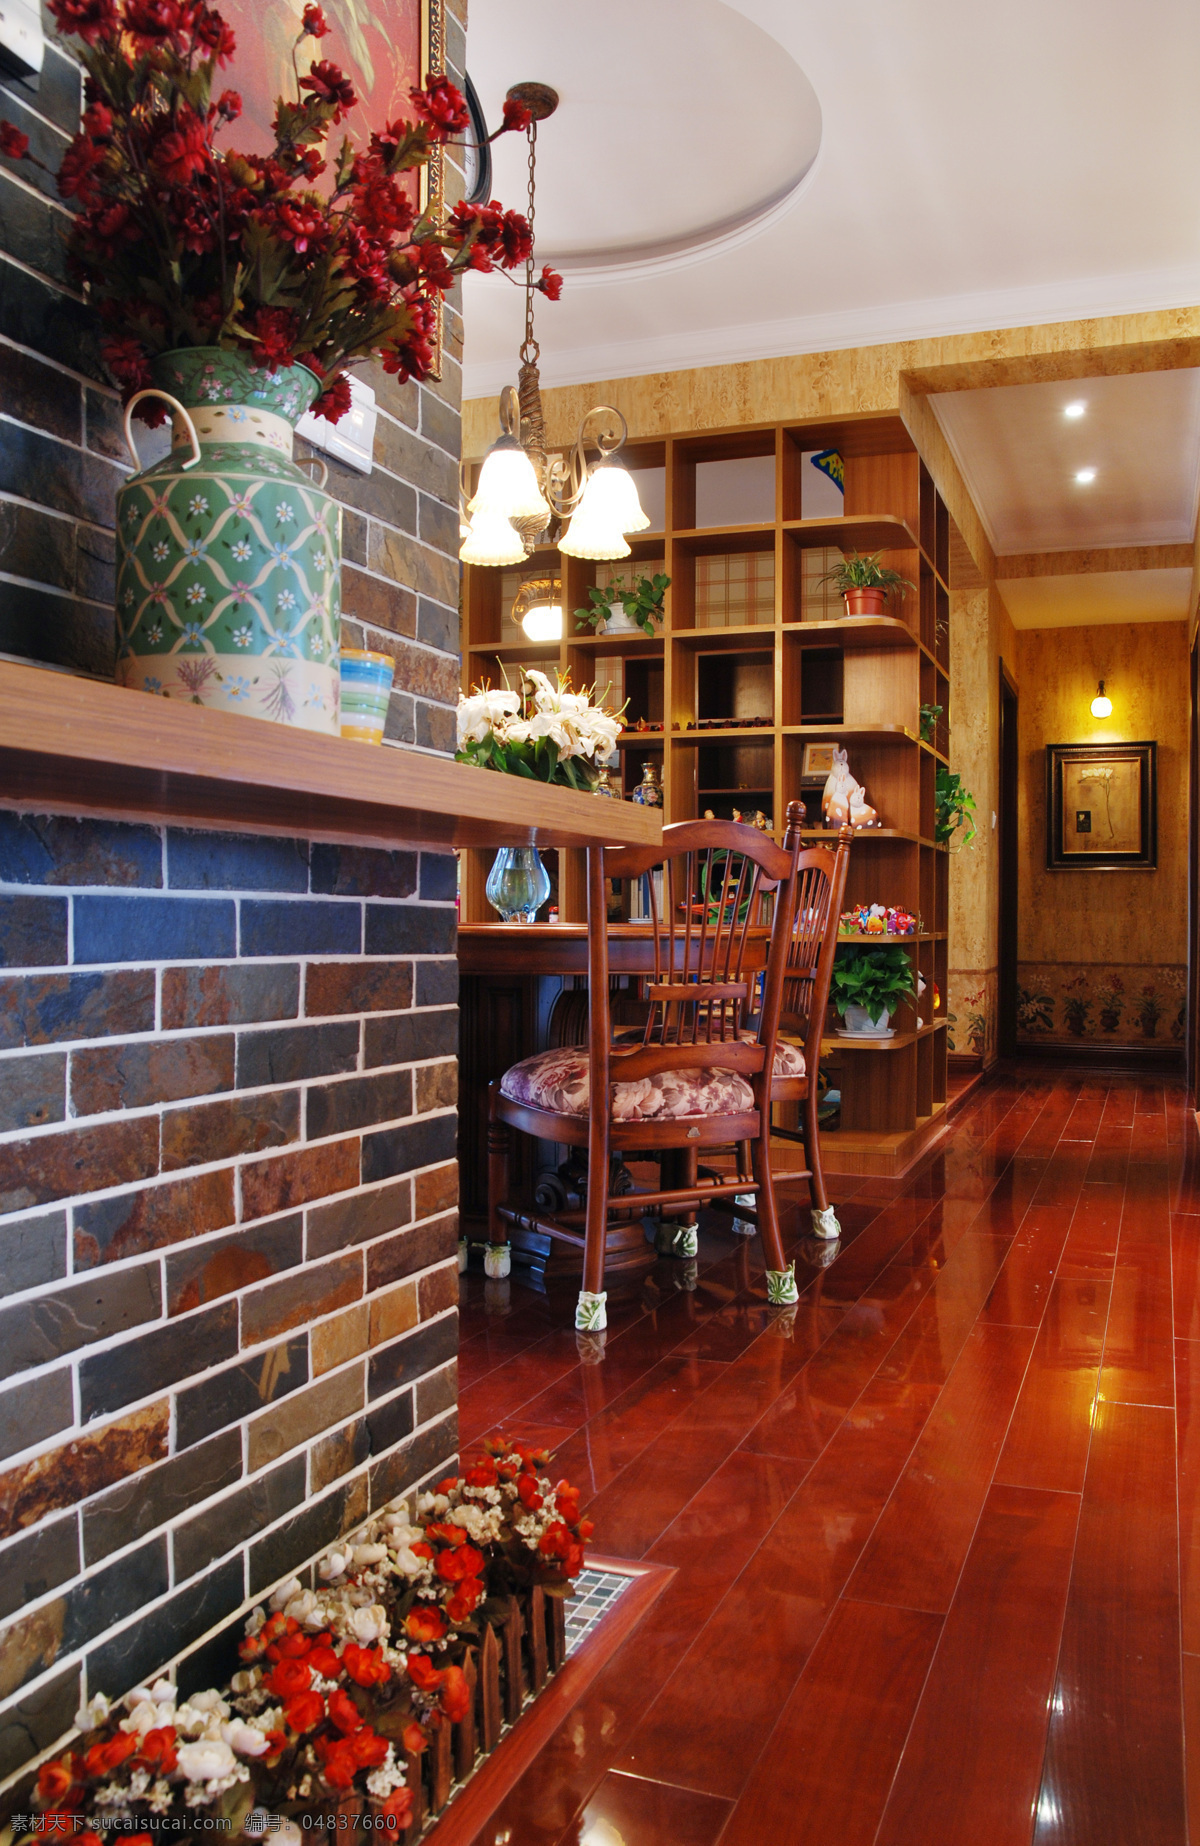 中式 古典 风 室内设计 餐厅 木地板 效果图 简约 餐桌 白色 调 现代 家装